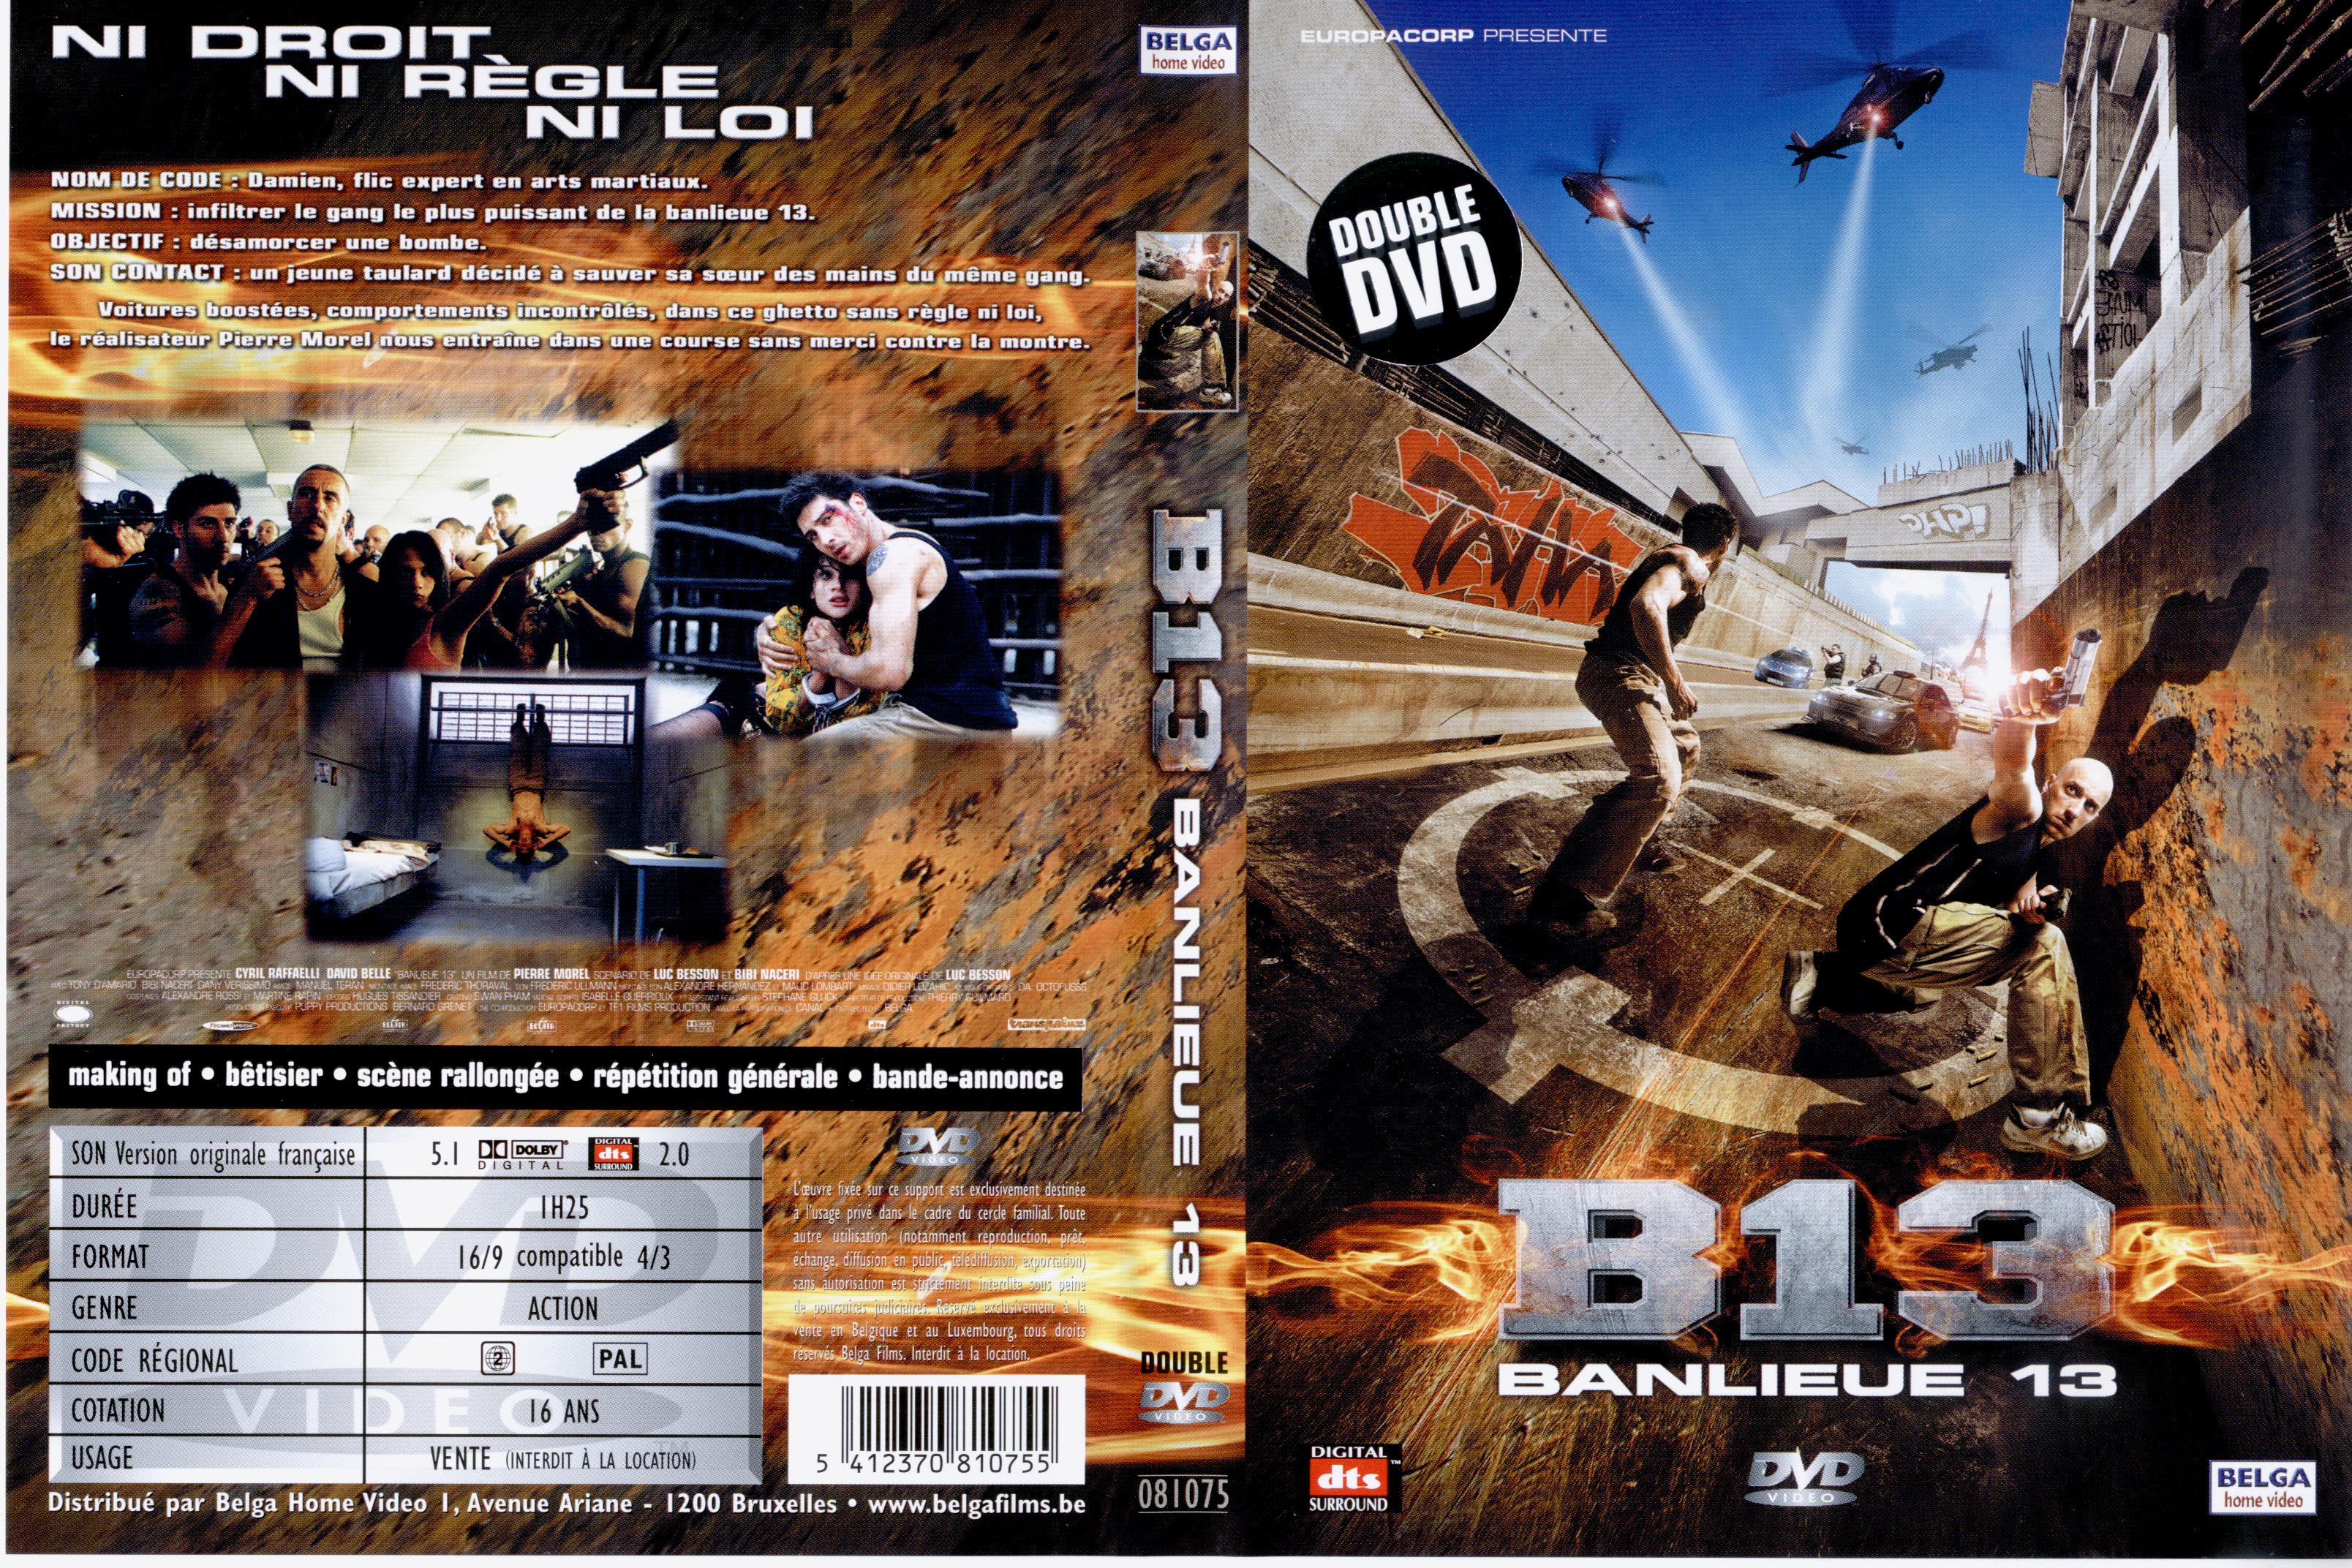 Jaquette DVD Banlieue 13